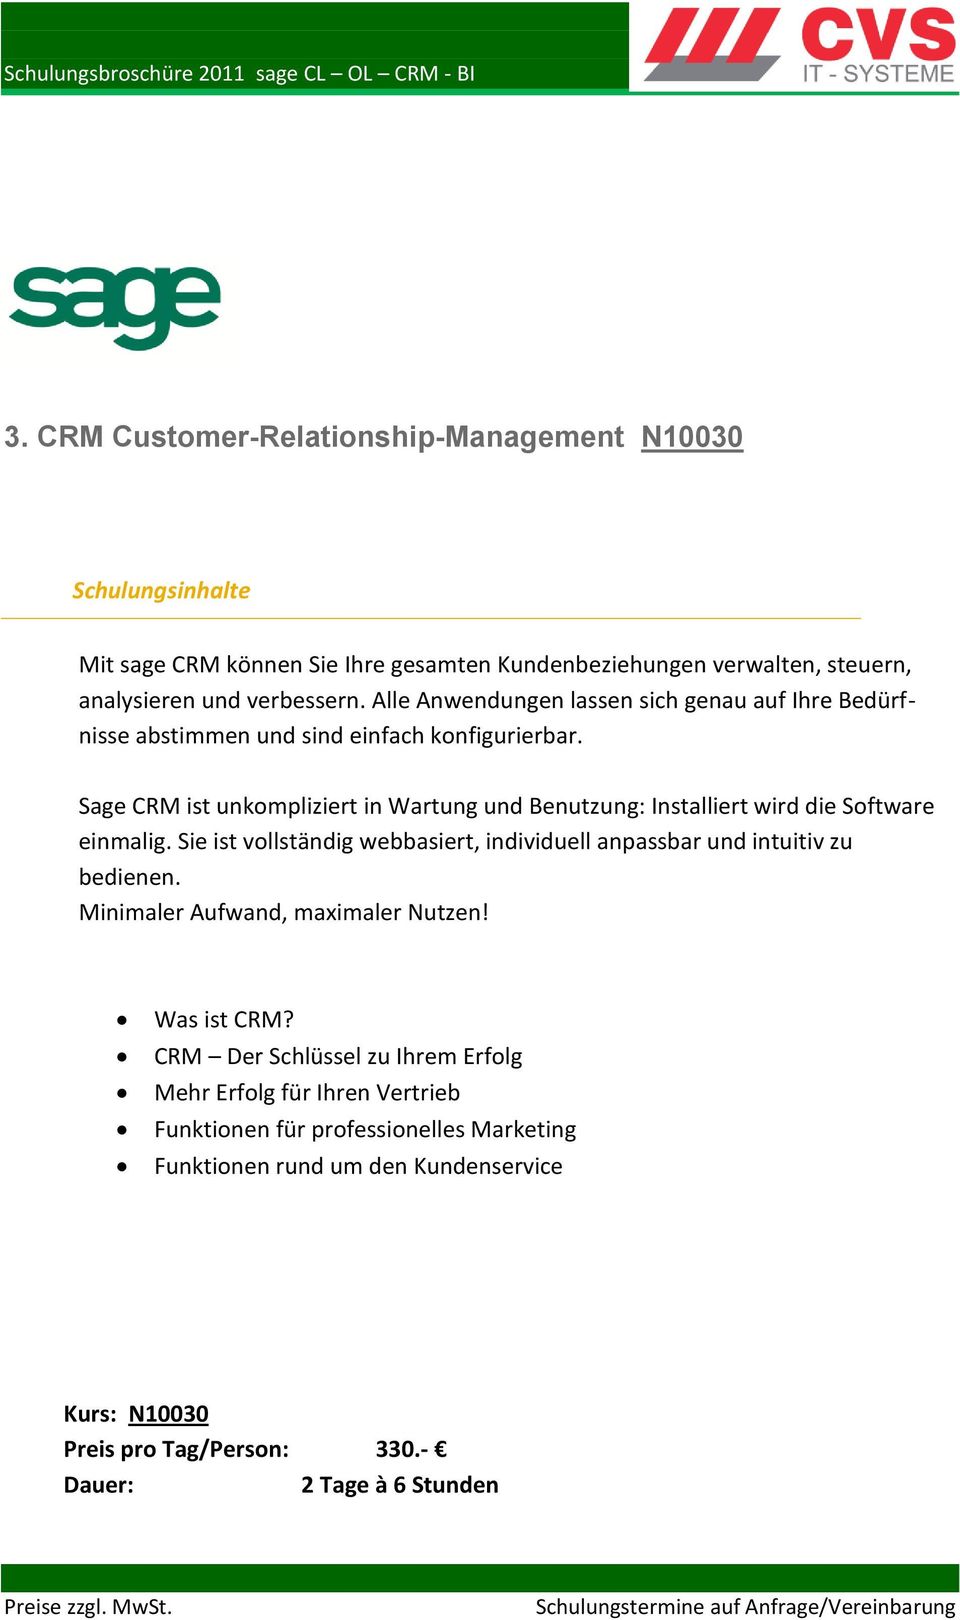 Sage CRM ist unkompliziert in Wartung und Benutzung: Installiert wird die Software einmalig.